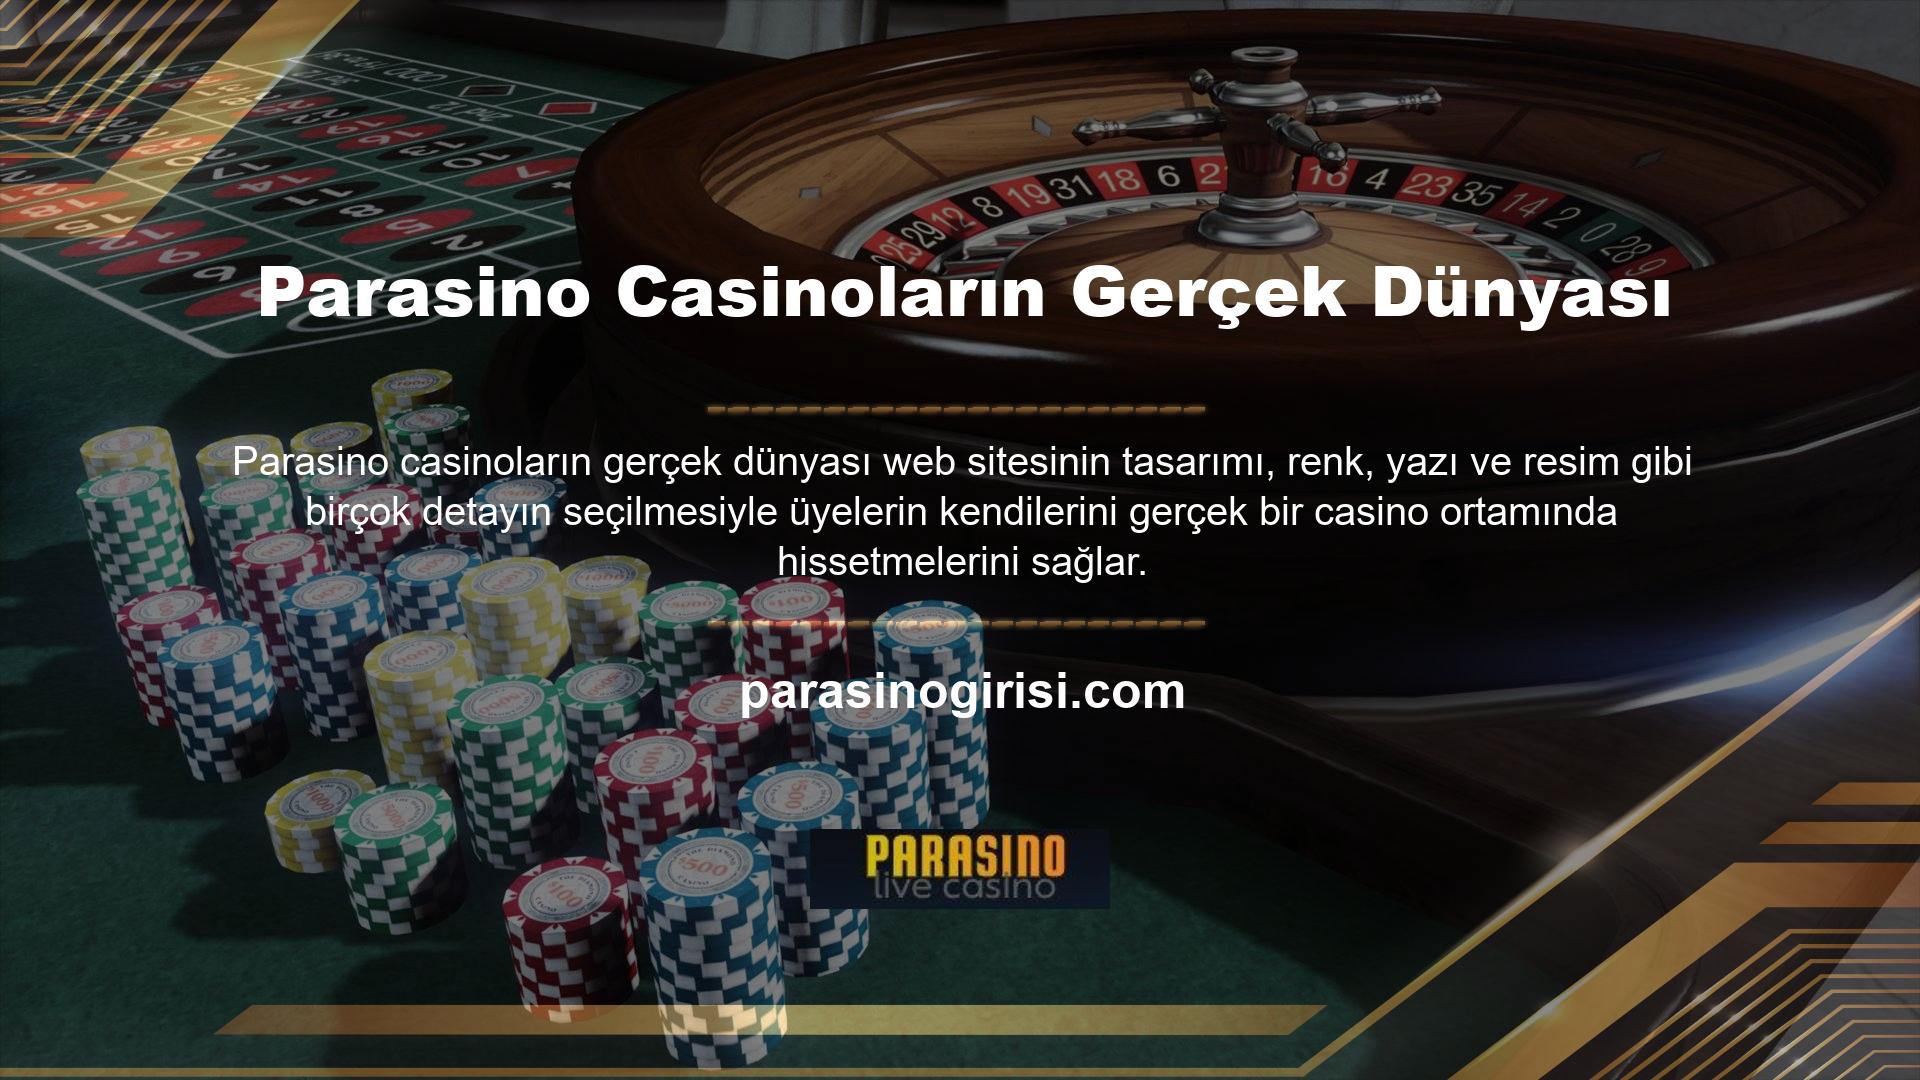 Casino oyunlarının çeşitliliği sayesinde üyelerin casino kategorisinde geçirdikleri süre artmaktadır